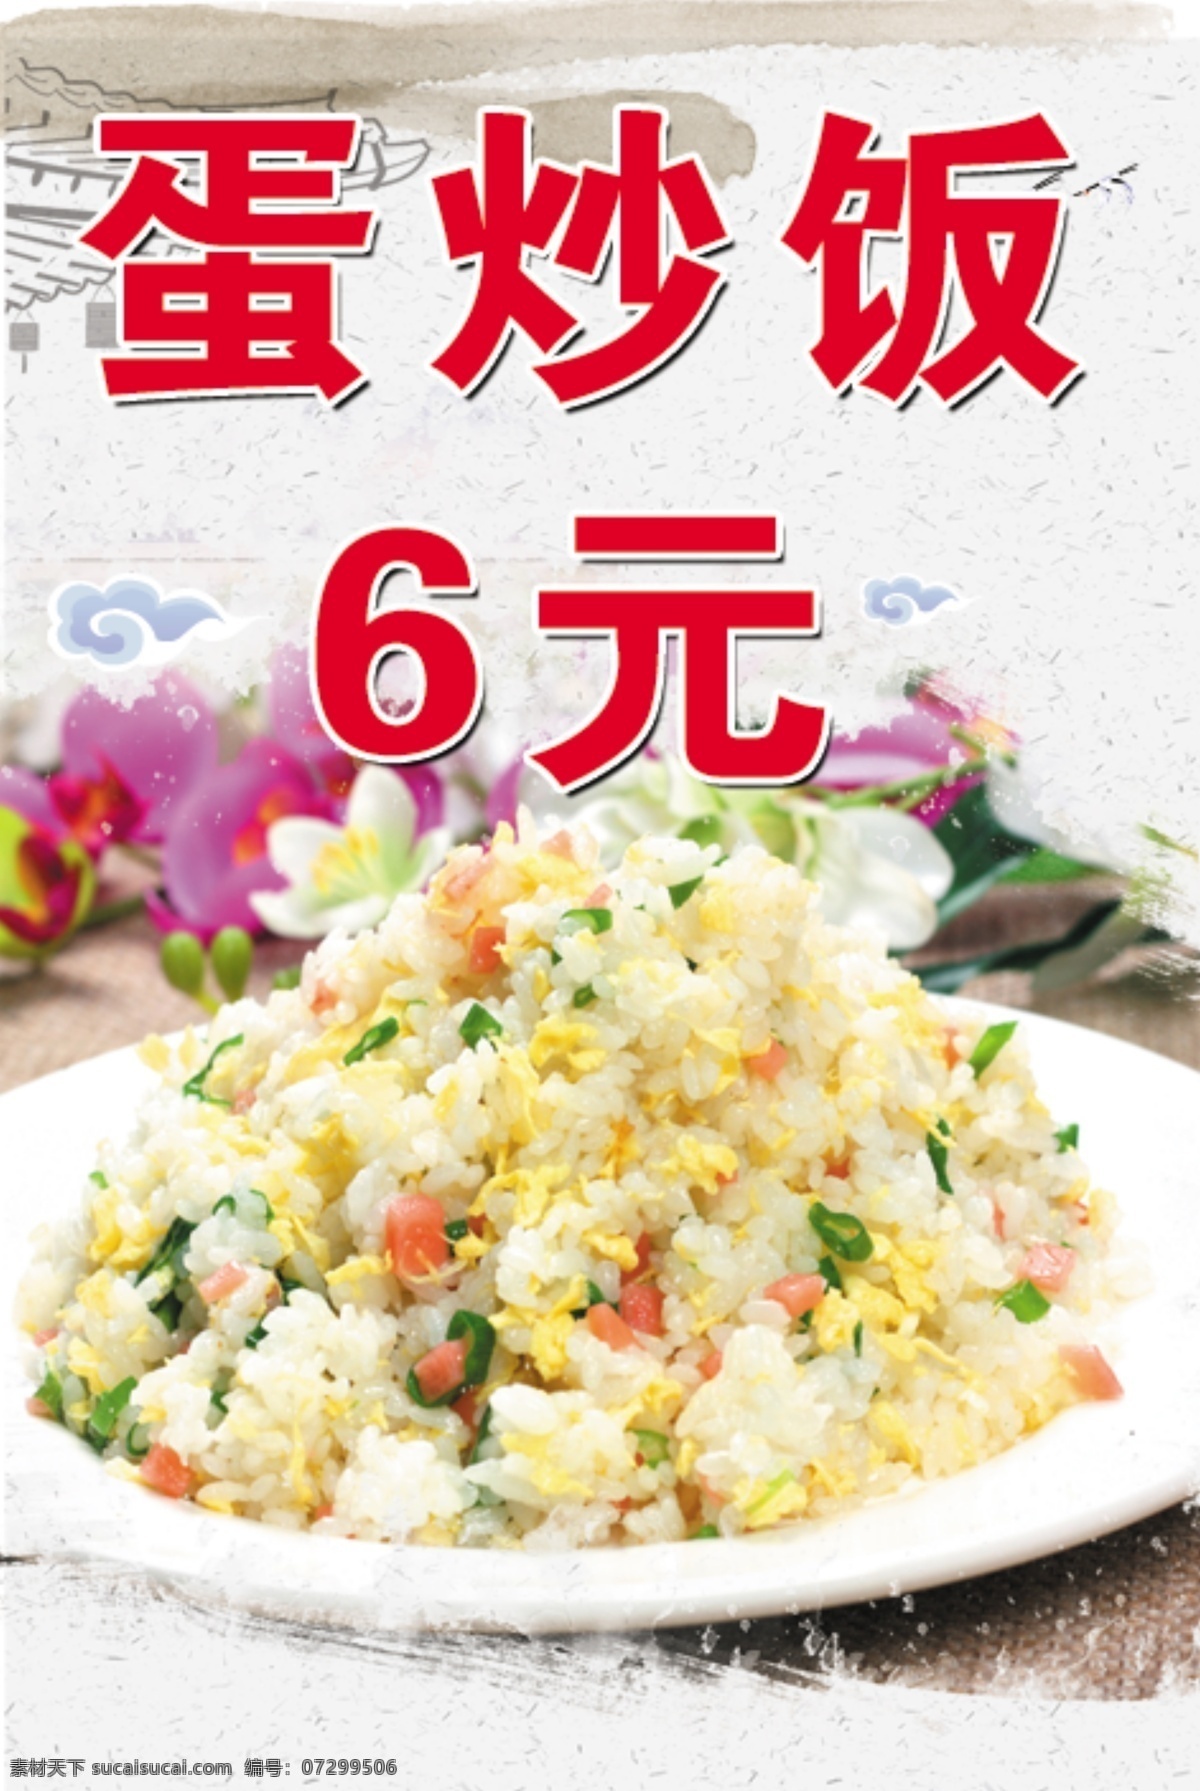 蛋炒饭图片 蛋炒饭 海报 美食 米饭 鸡蛋 dm宣传单